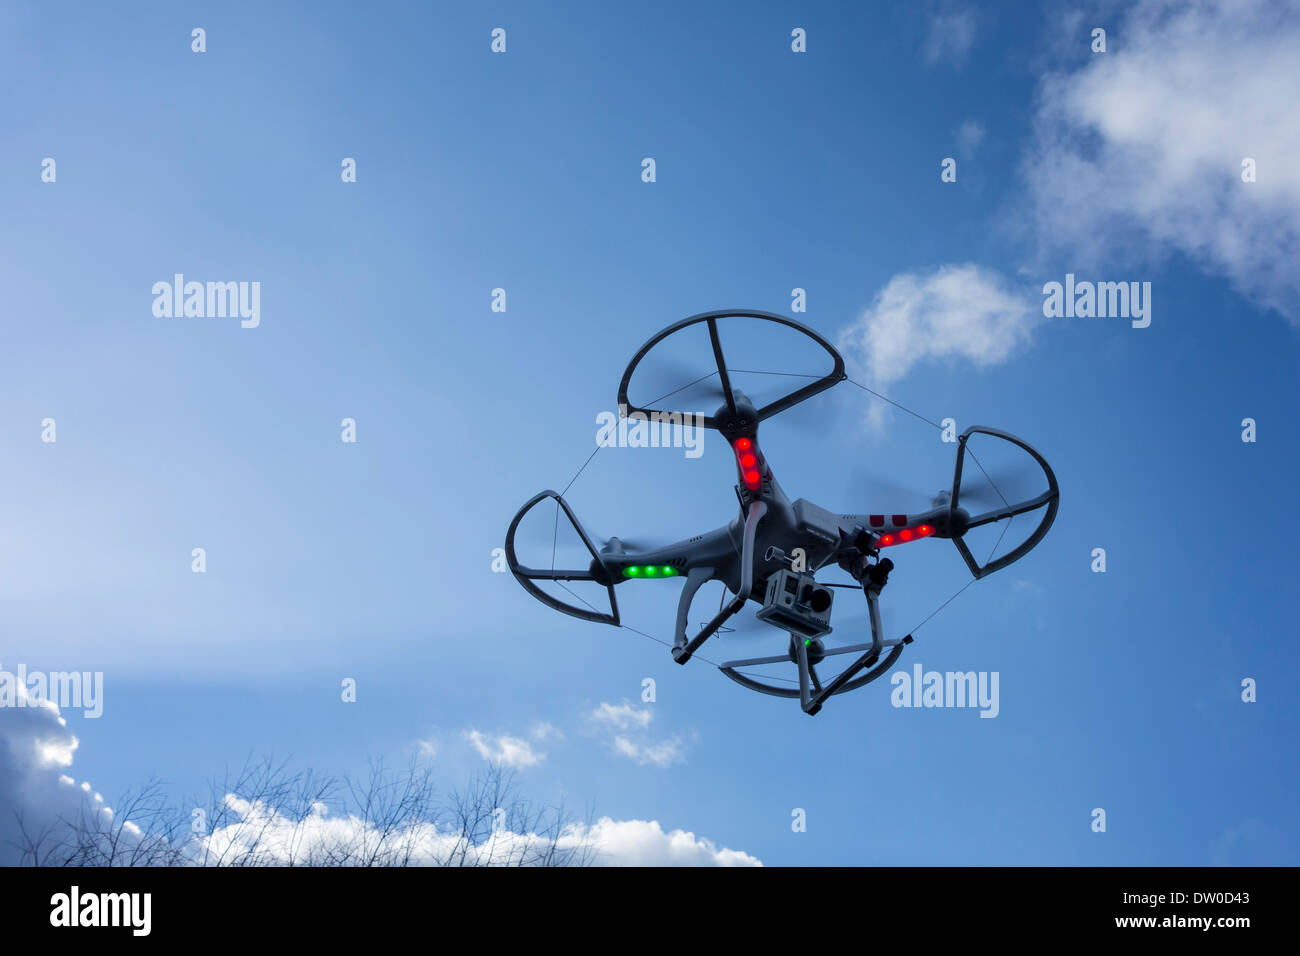 Miniatura drone / vehículo aéreo no tripulado / UAV equipado con cámara en vuelo contra el cielo azul con nubes Foto de stock